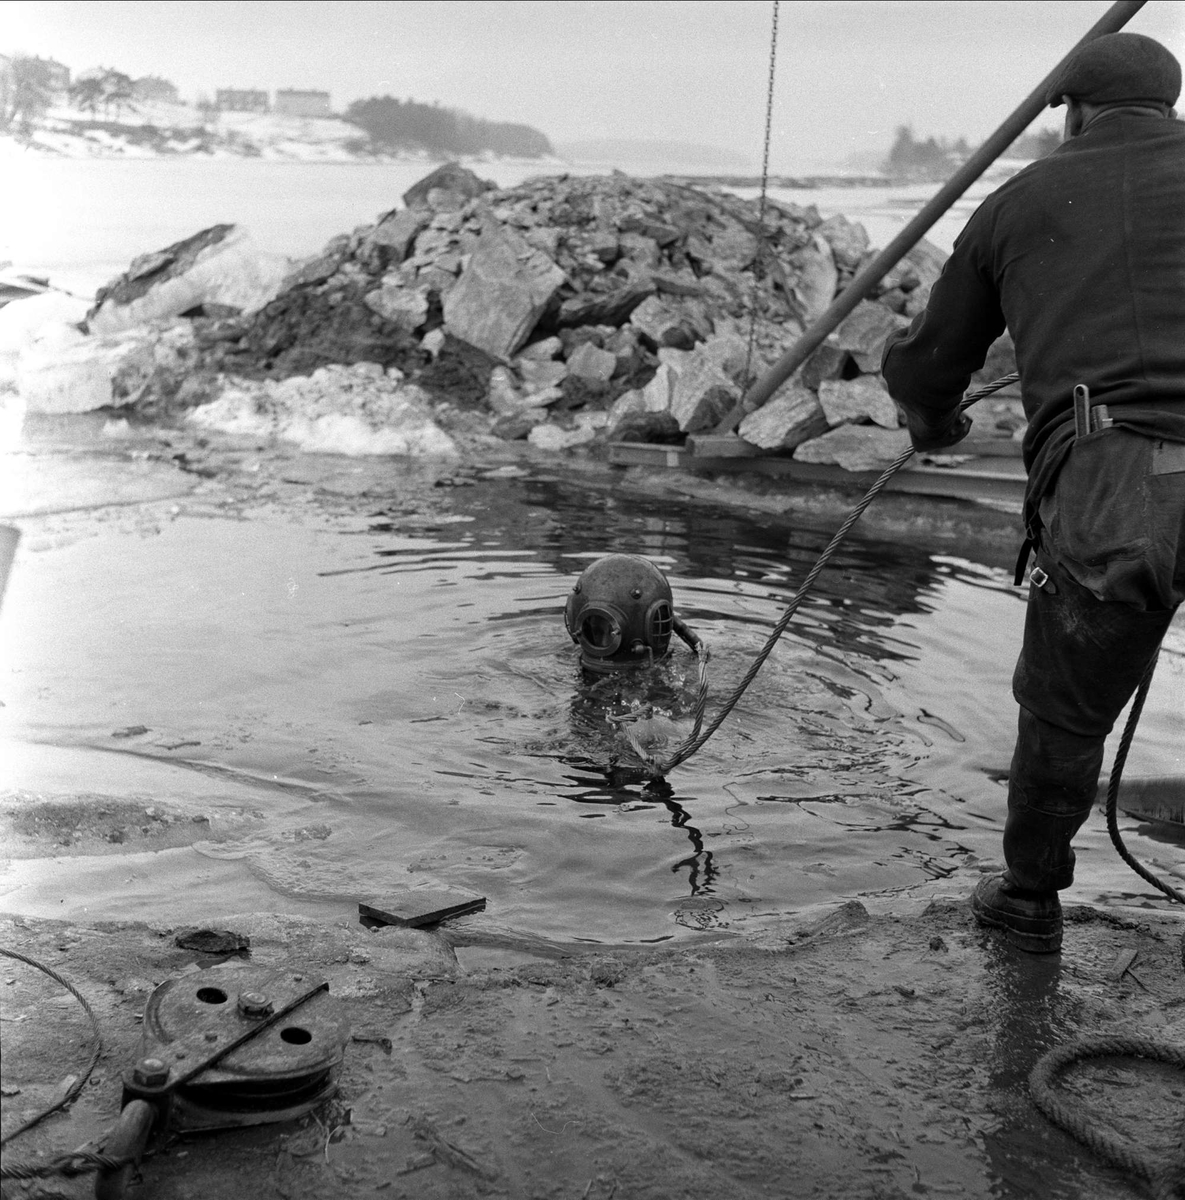 Trelleborg Gummi legger ut slange ved Sarpsborg, mars, 1959. Dykker i vannet.